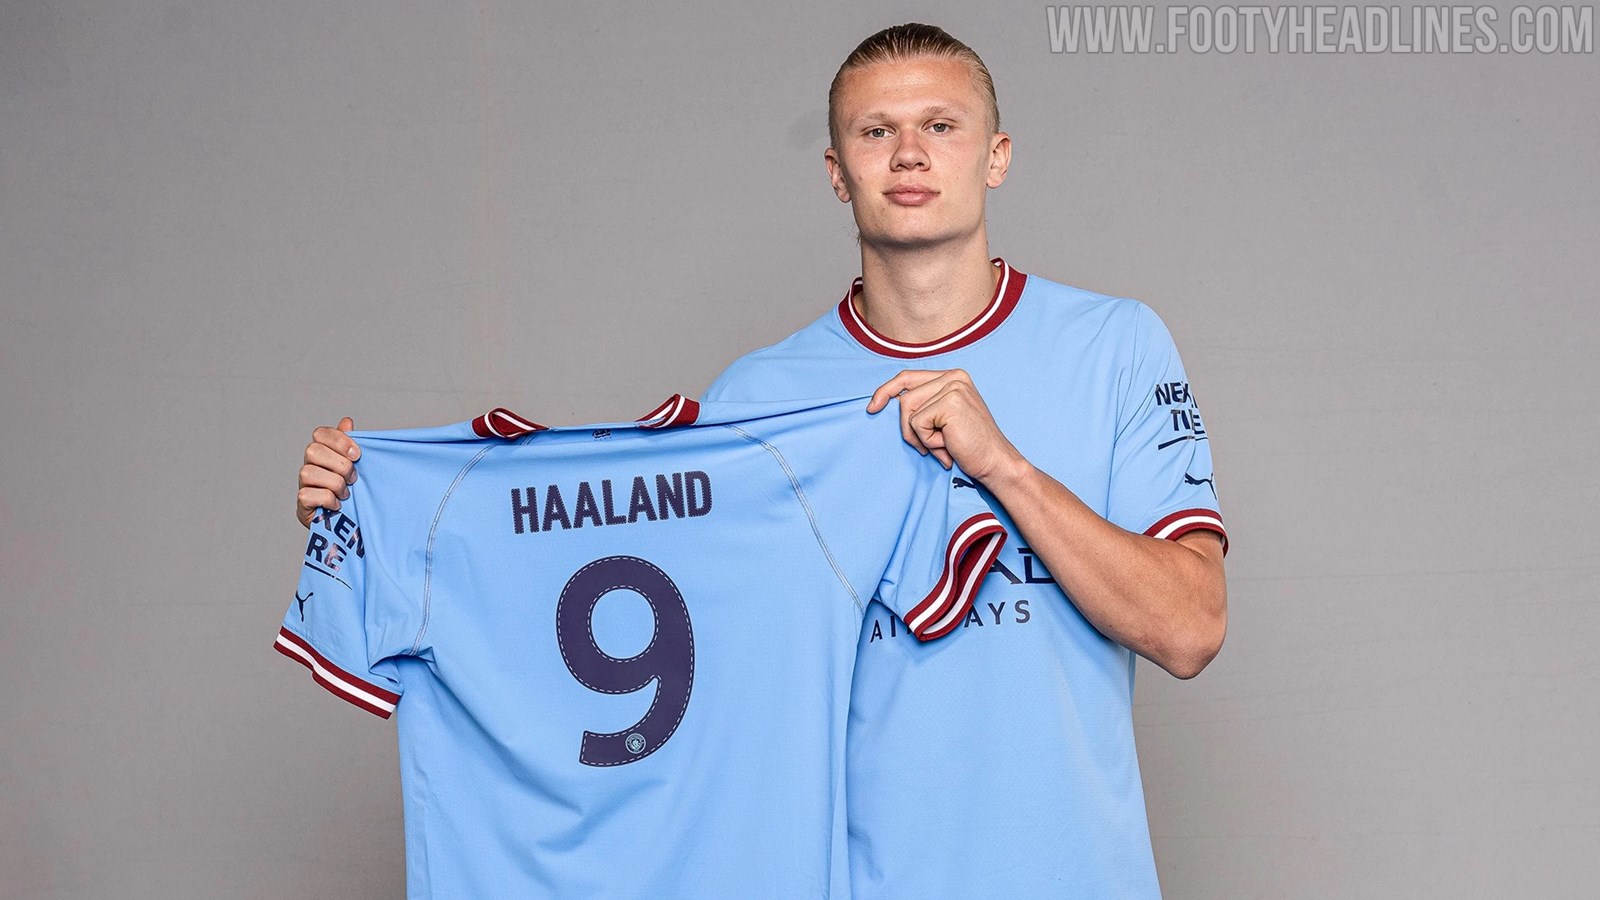 Hoe schuifelen Goodwill Haaland Chooses No. 9 Manchester City Shirt - Footy Headlines